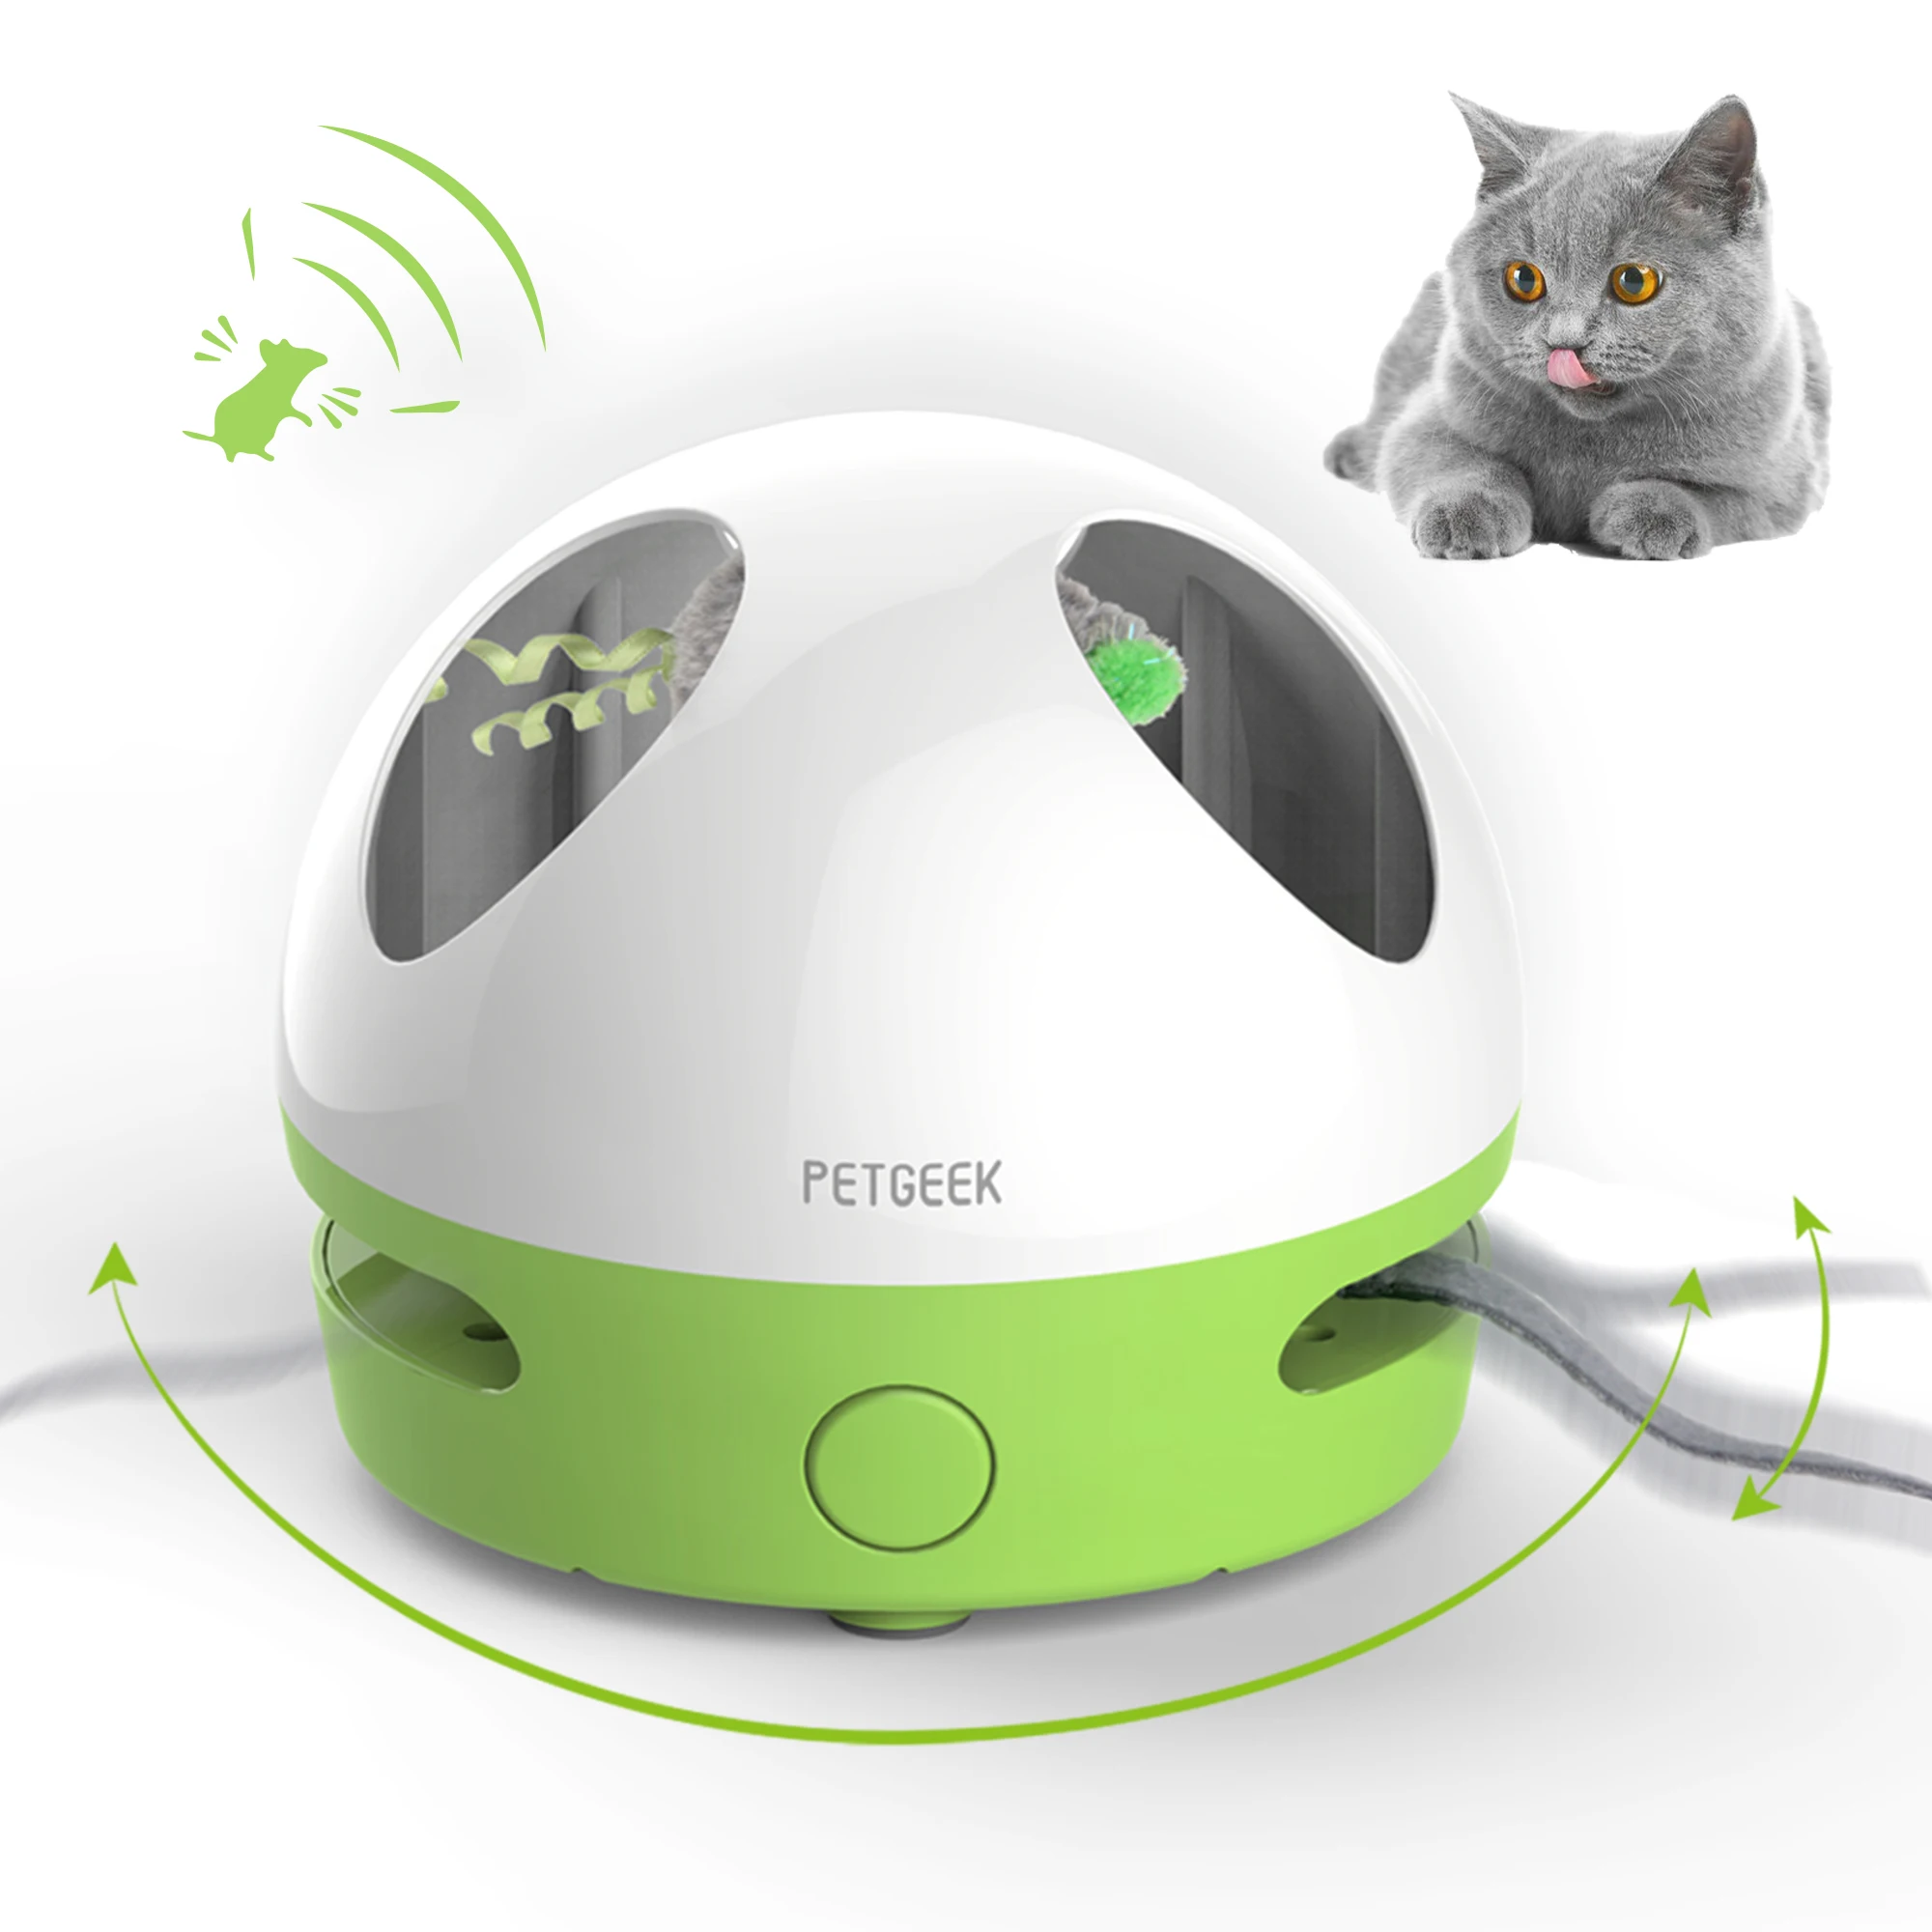 Звуки писк мышей слушать. PETGEEK интерактивная игрушка. Игрушка для кошки. Игрушка для кошек с прячущимися мышами. Интерактивная игрушка для кошек-PETGEEK-Running Smart.